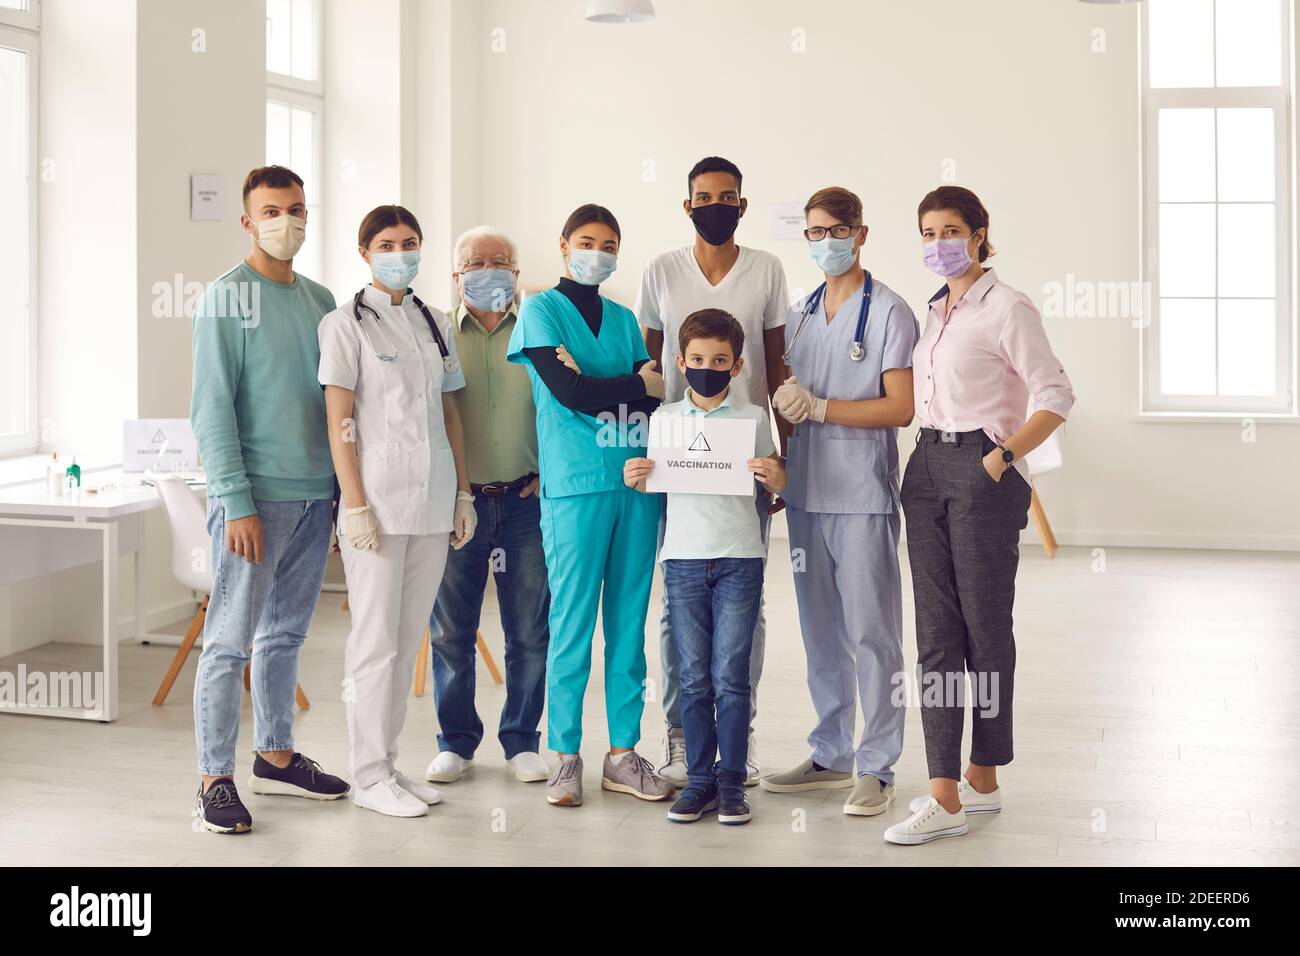 Gruppe von Erwachsenen mit kleinen Jungen, alle in Gesichtsmasken, ruft die Menschen für die Impfung Stockfoto